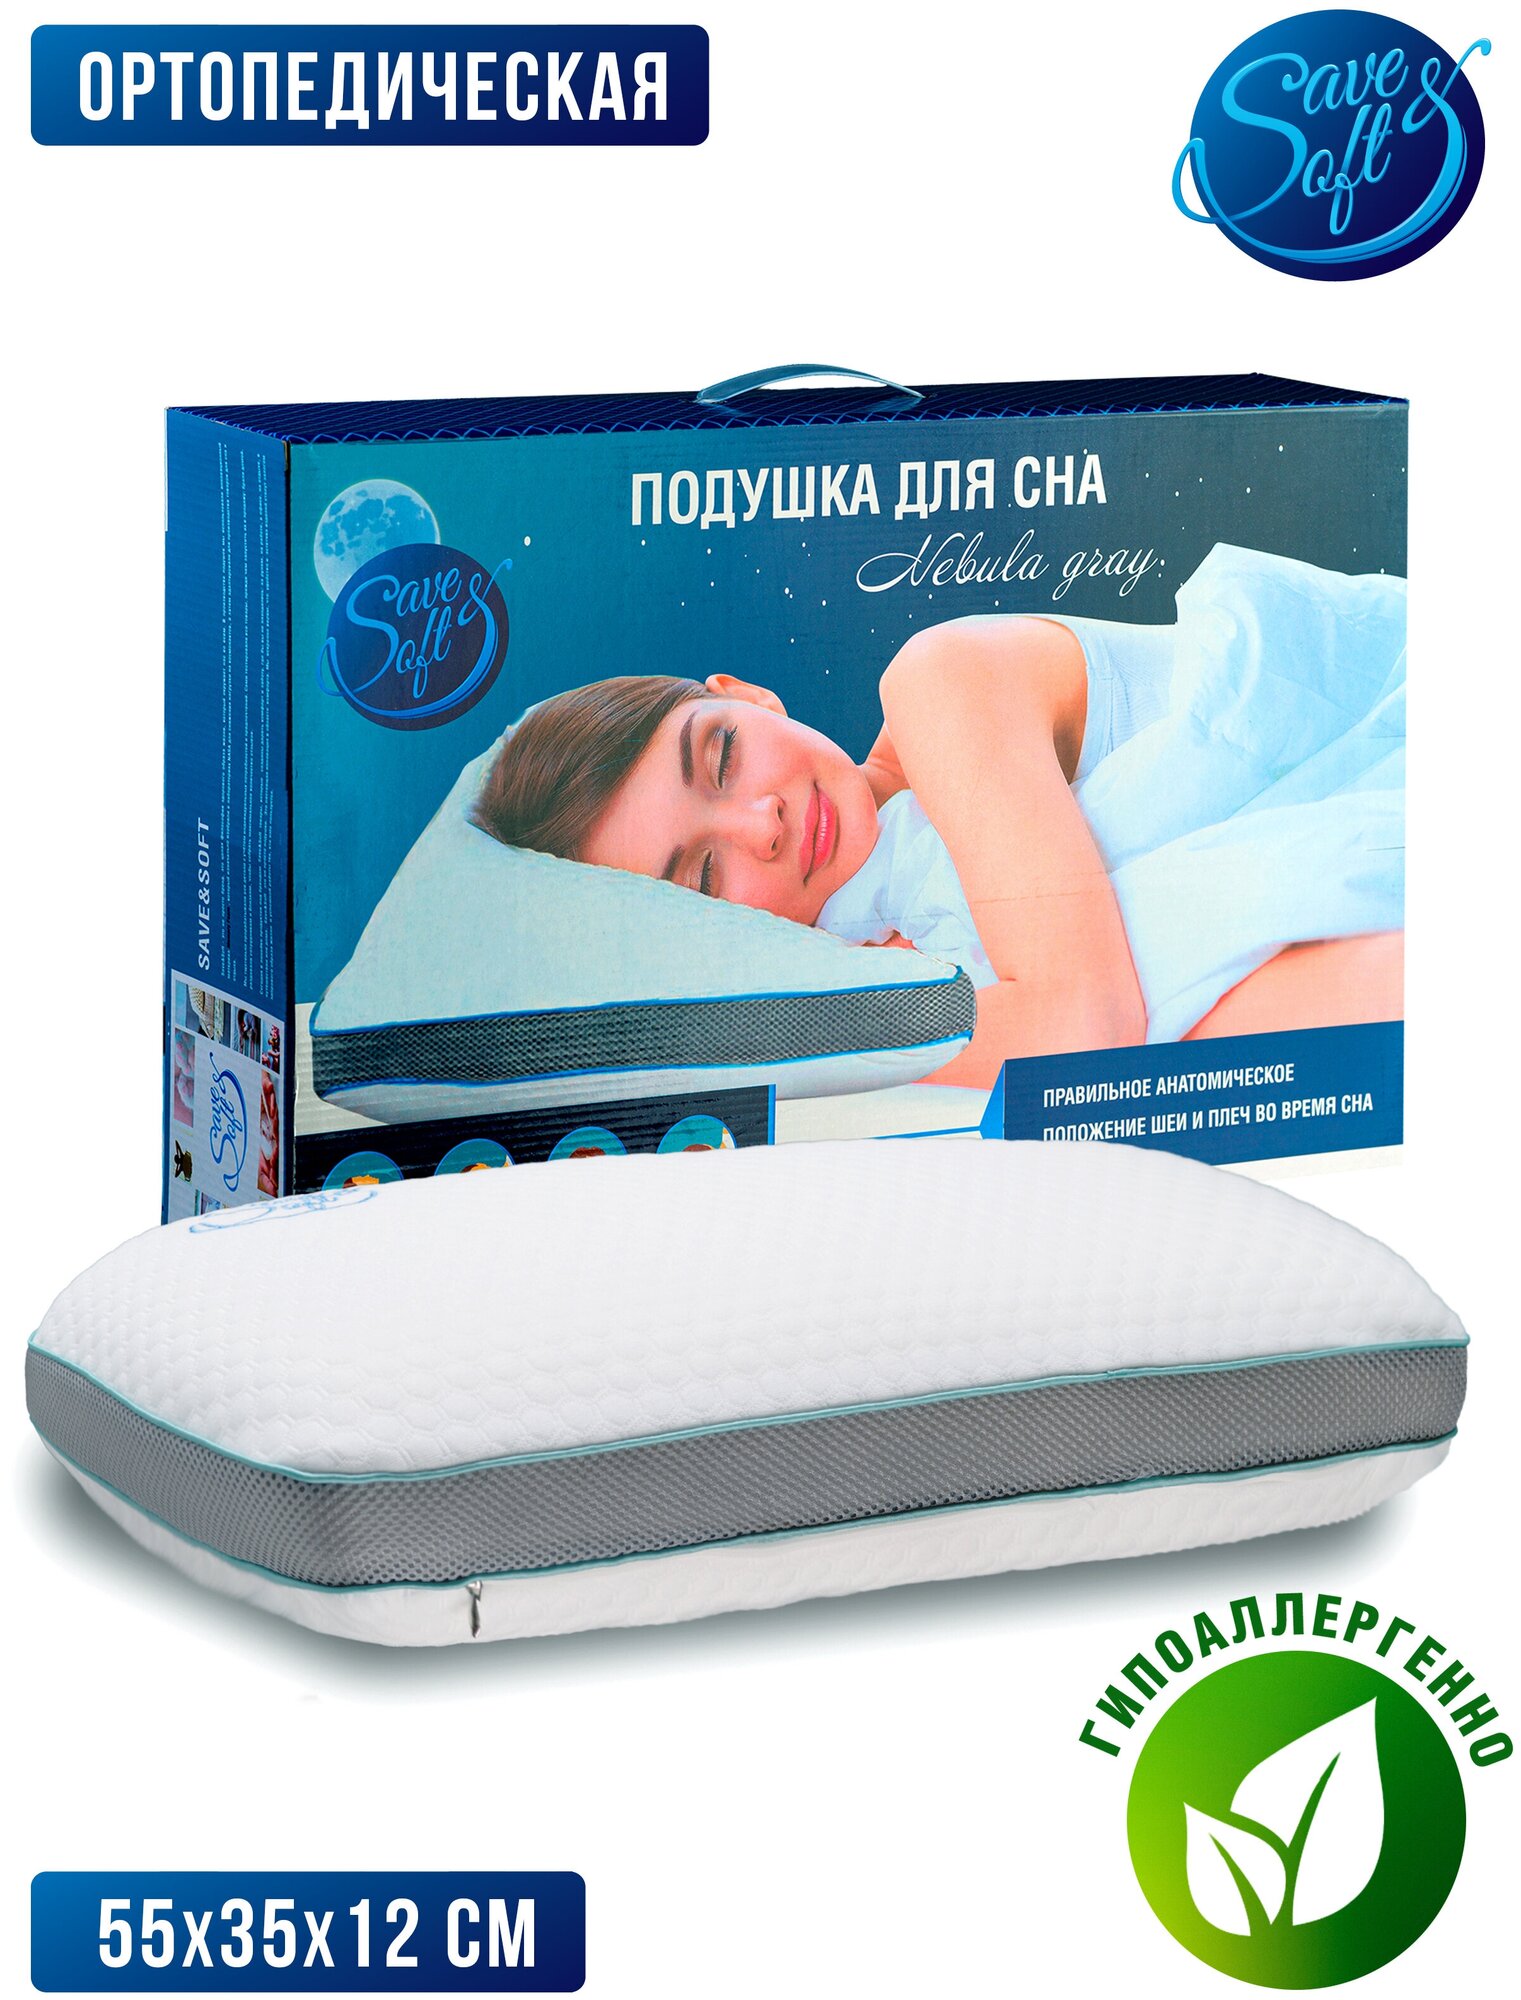 Ортопедическая подушка SAVE&SOFT для сна 55х35 классическая с эффектом памяти, Анатомическая подушка Memory Foam для шеи и головы, высота 12 см - фотография № 2